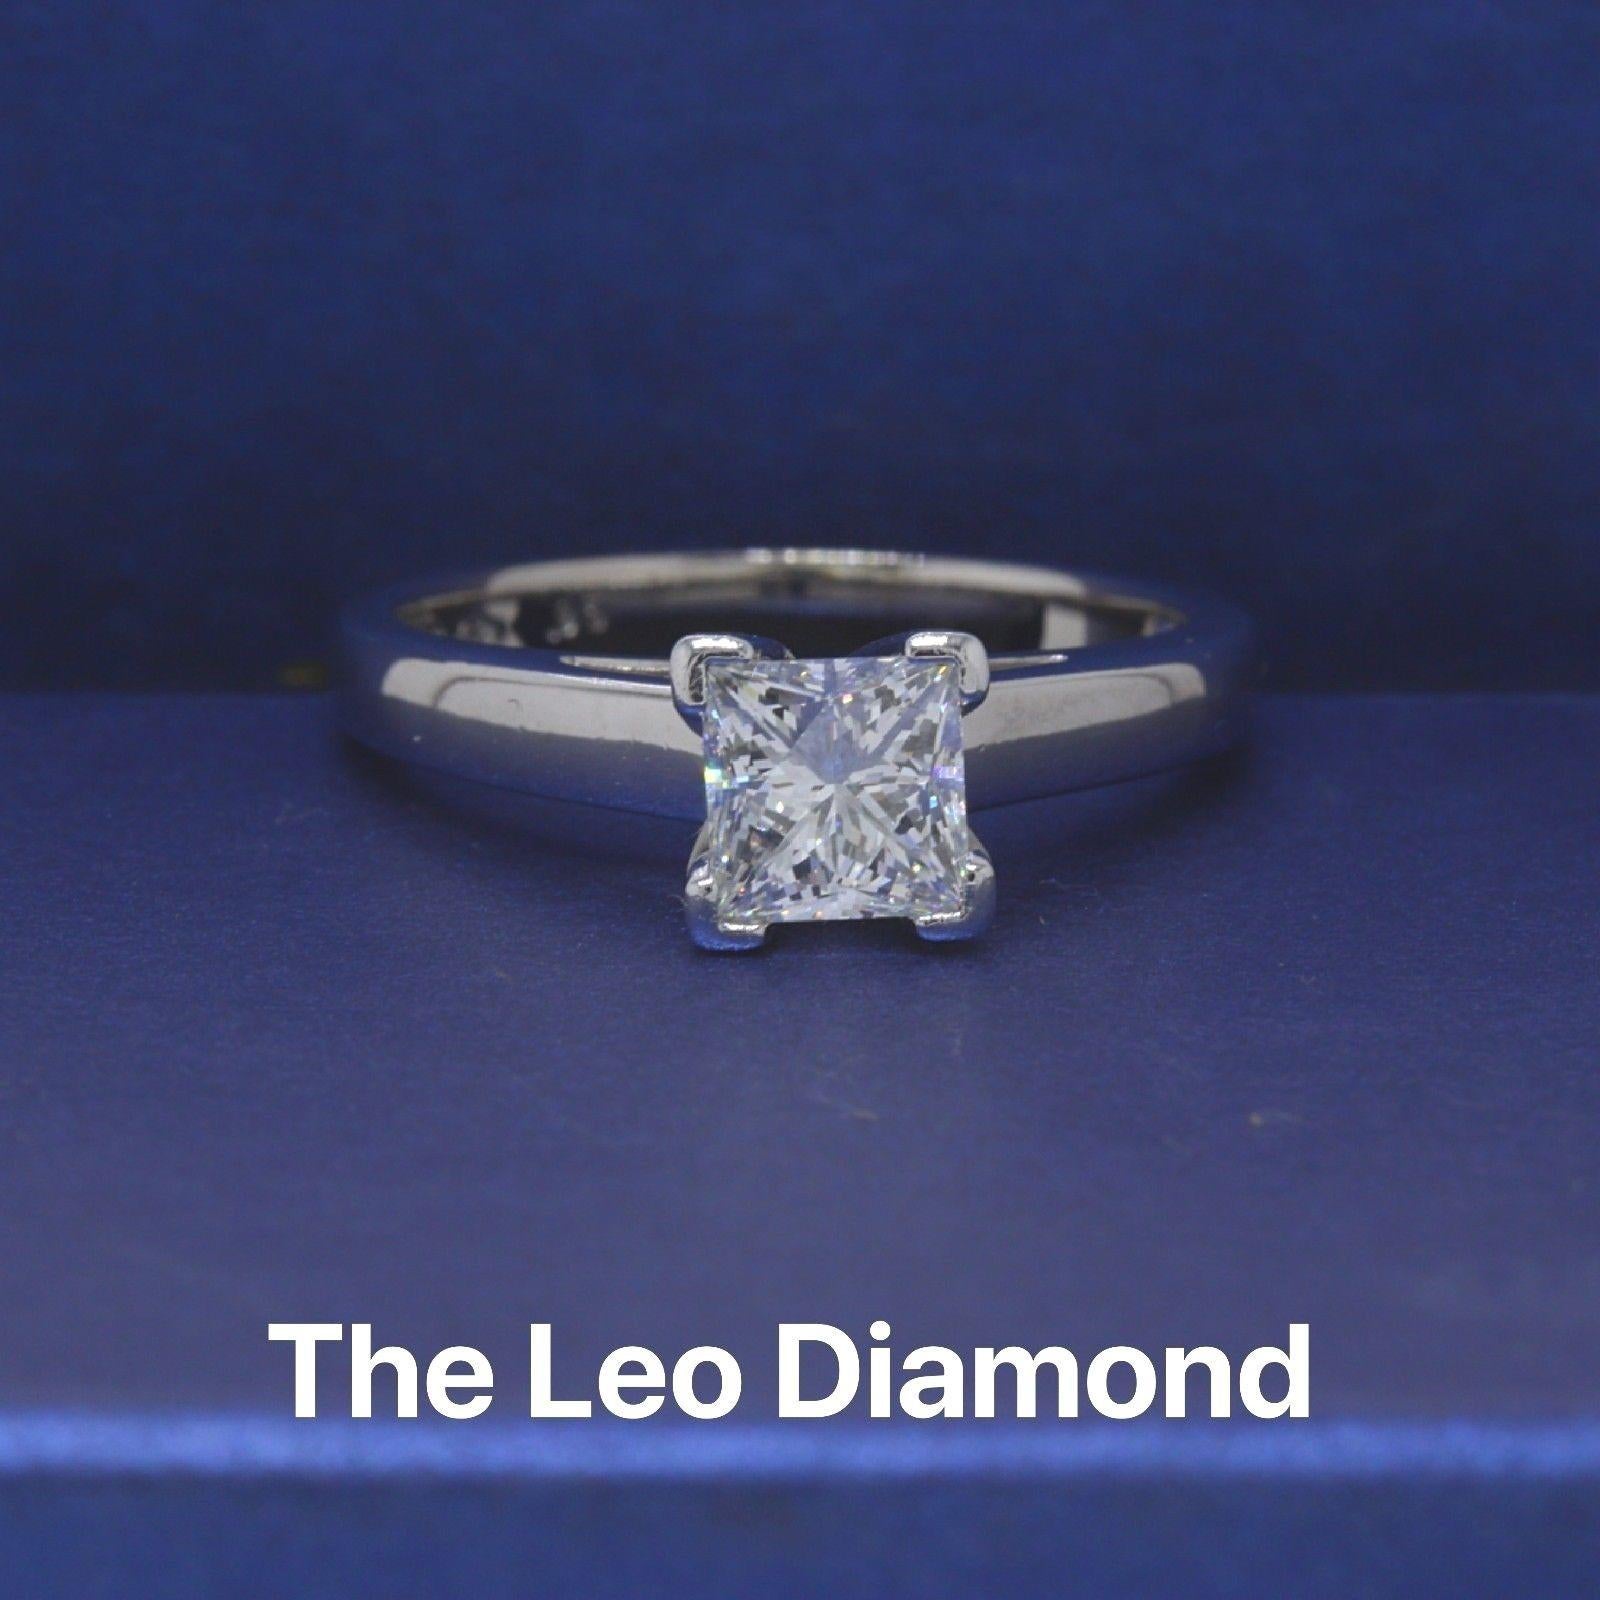 LEO DIAMOND
Style : Solitaire
Numéro de série : LEO 2008450S
Métal : or blanc 14KT
Taille :  6,75 (assez grand)
Poids total en carats :  0,95CTS
Forme du diamant : LEO Princesse
Couleur et pureté du diamant : H / SI1
Commentaires : Le diamant porte